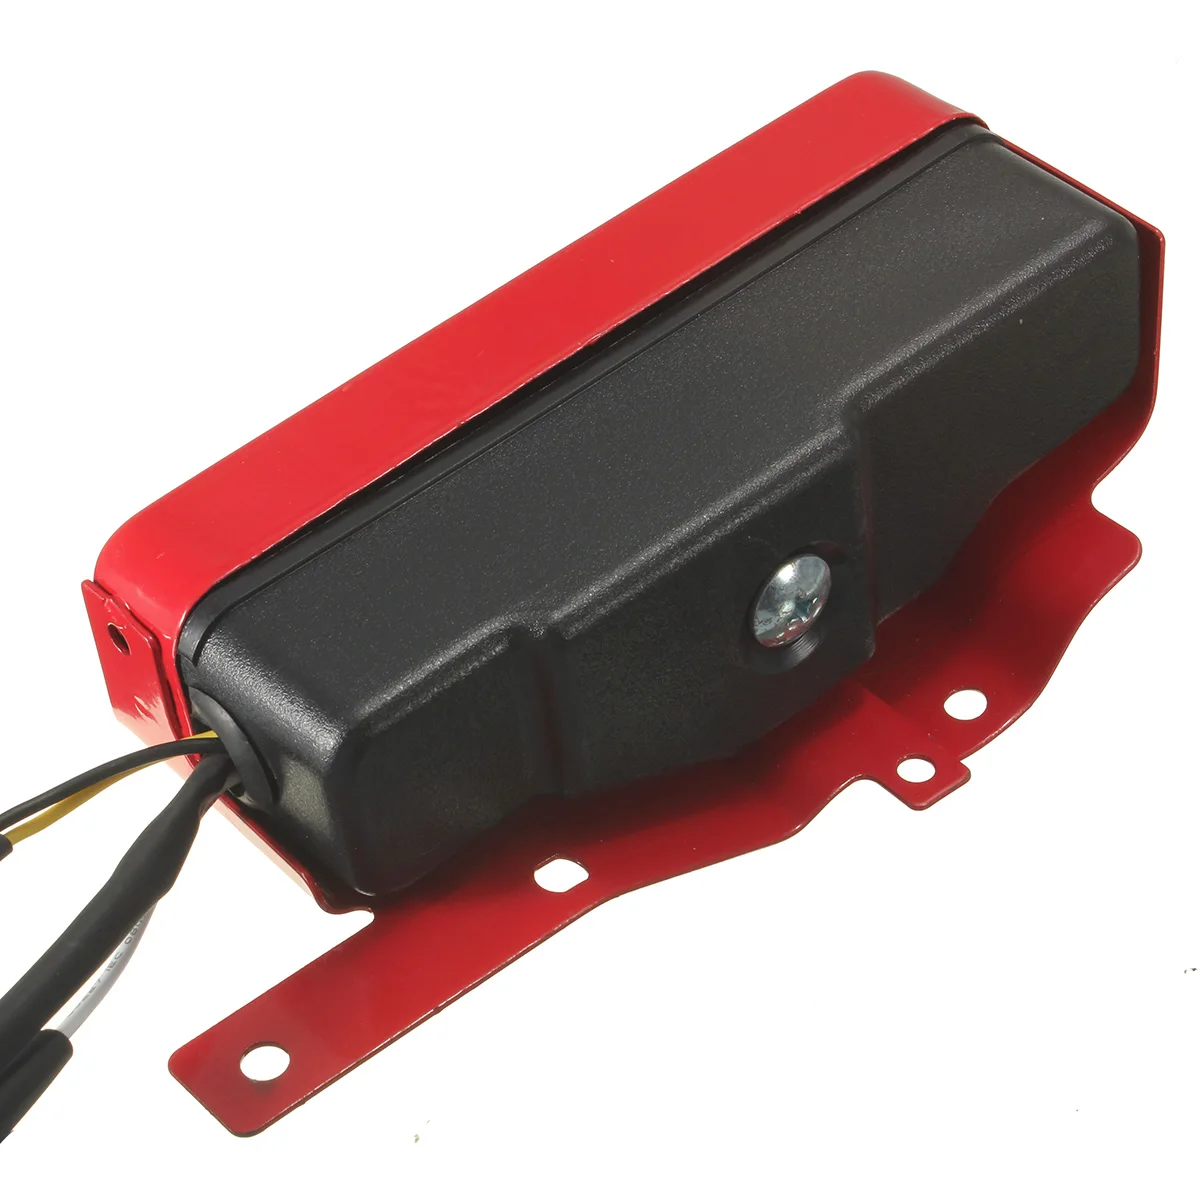 1 компл. ключ зажигания переключатель коробки Электрический переключатель зажигания с 2 клавишами панели для Honda GX340 GX390 11HP 13HP двигатель красного цвета